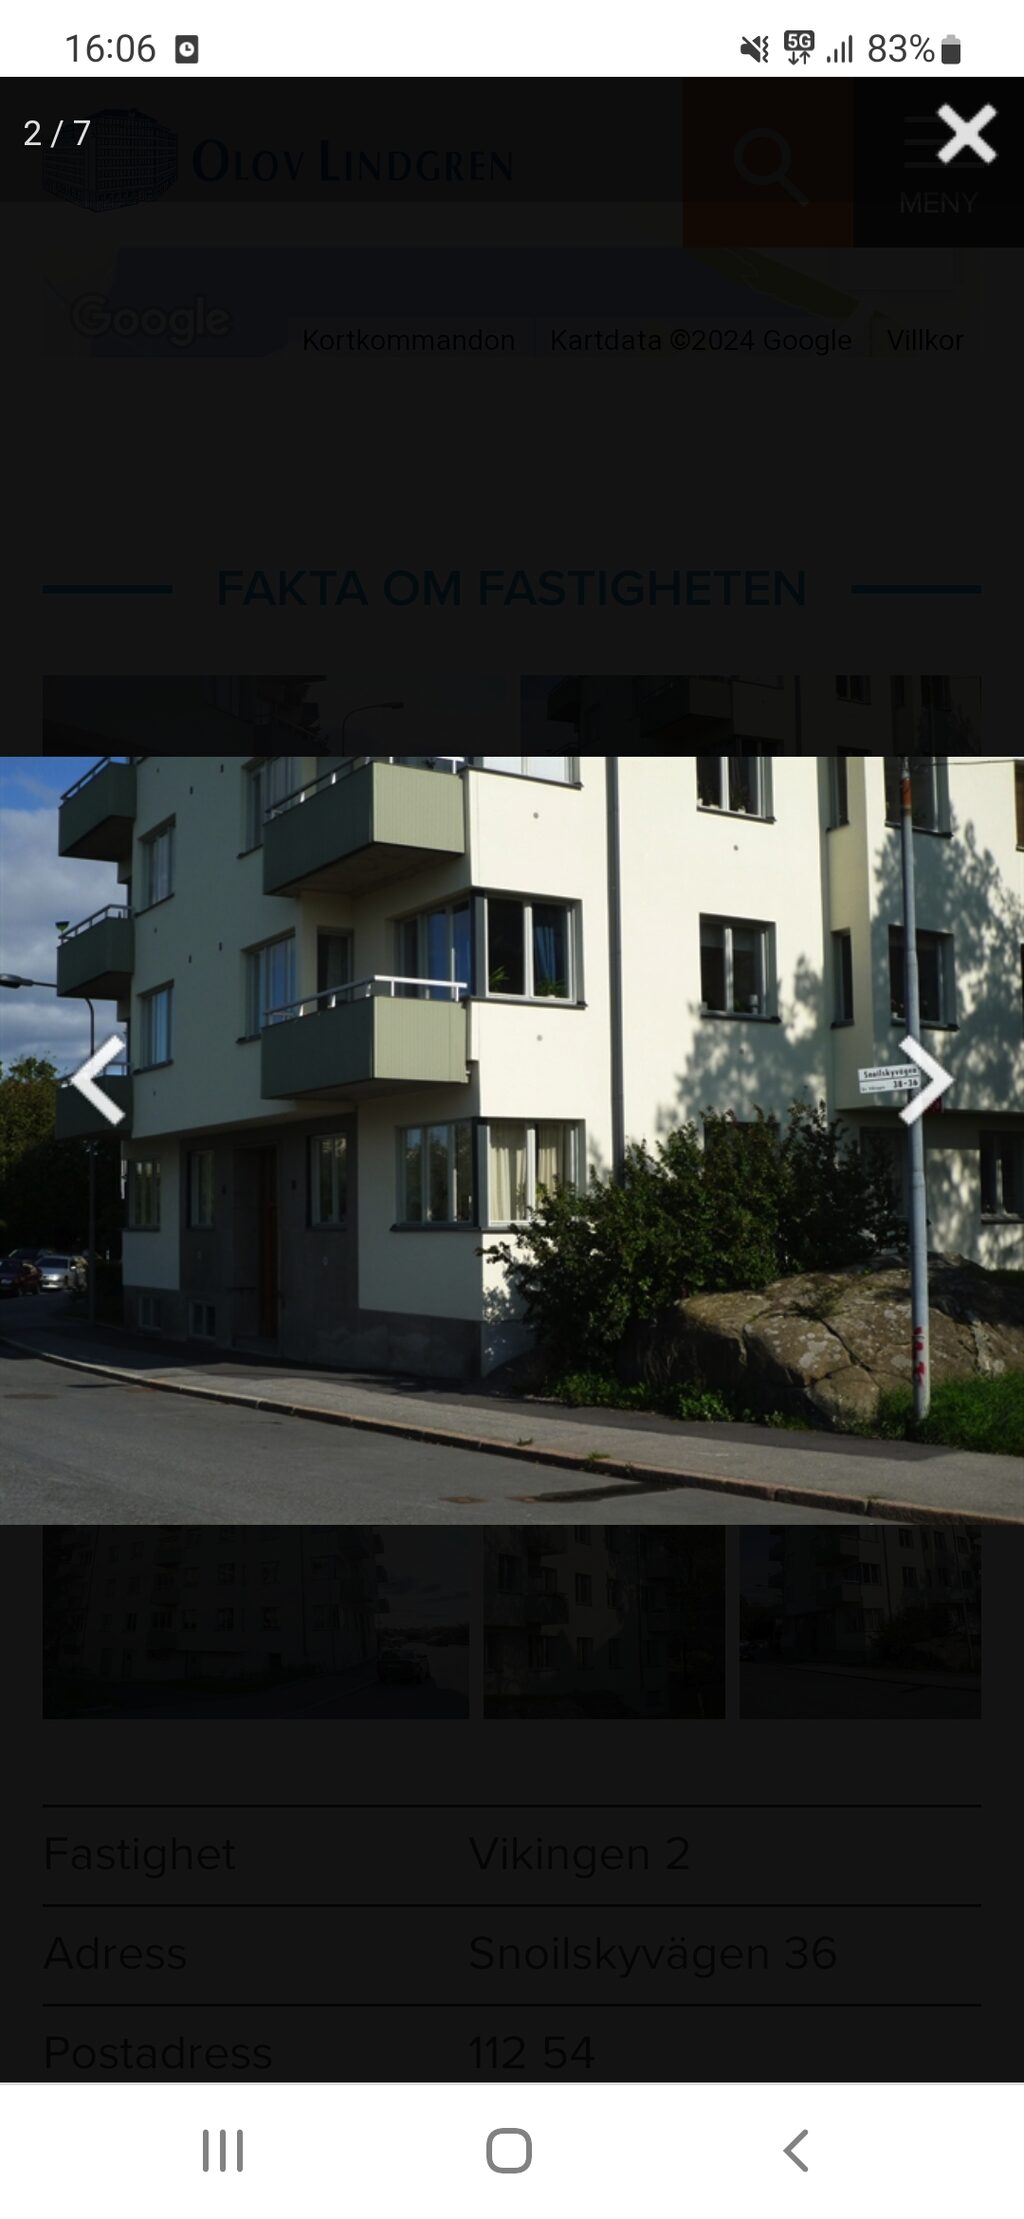 Lägenhetsbyte - Snoilskyvägen 36